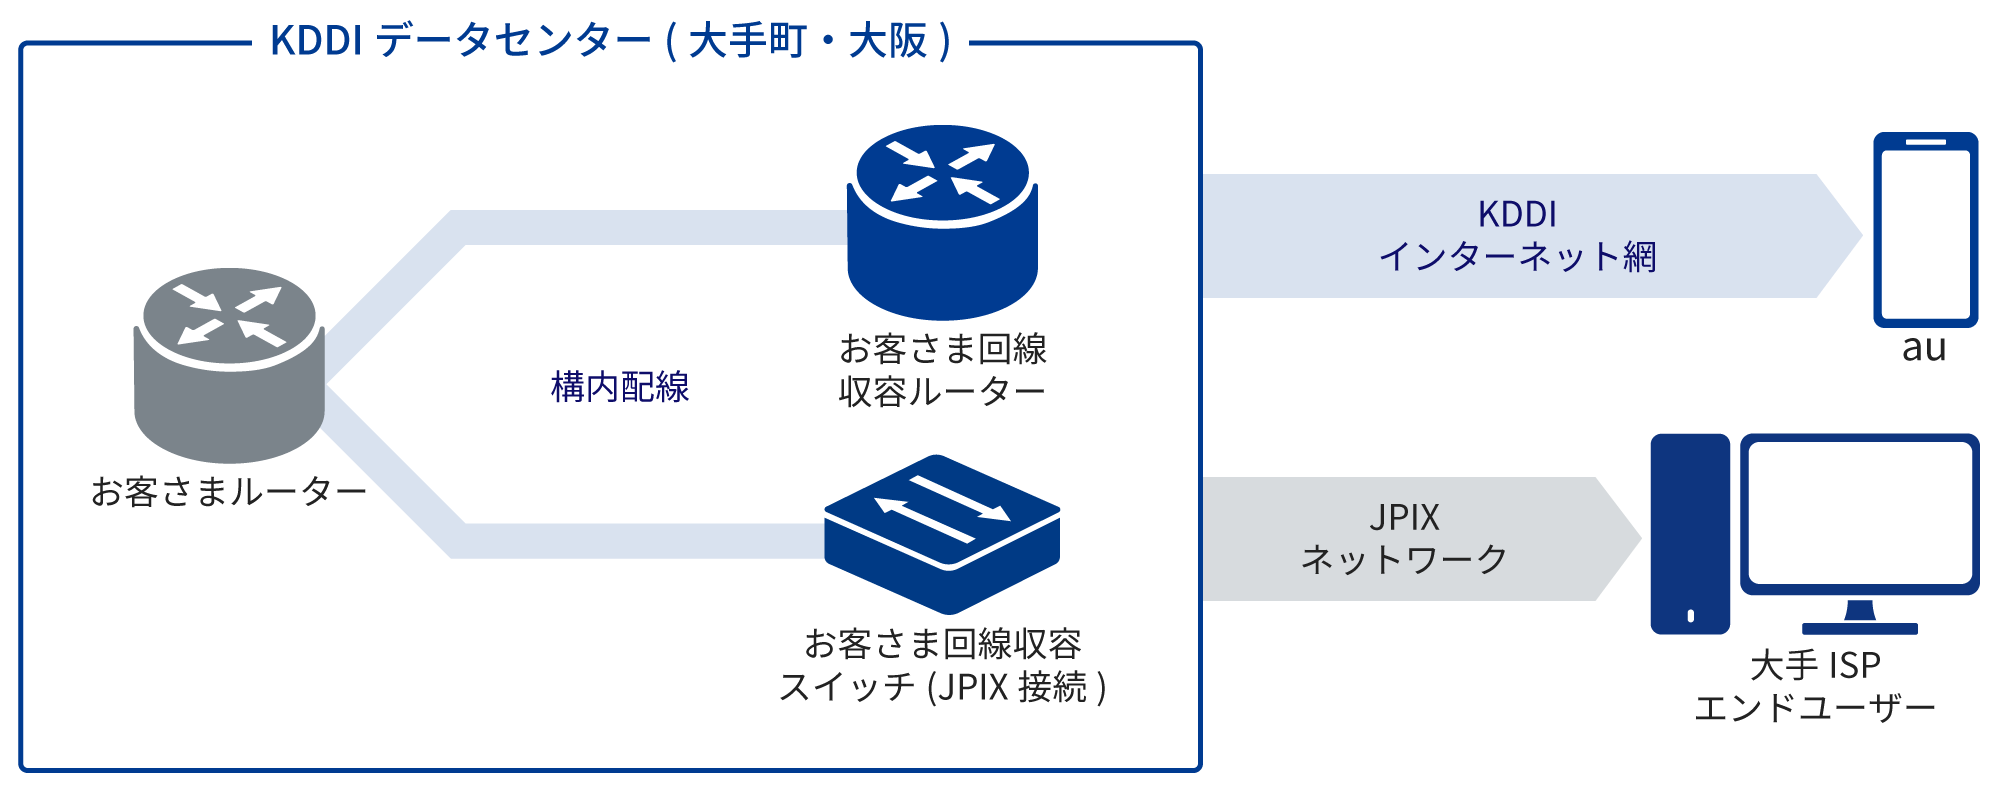 KDDIインターネットゲートウェイを大手町・大阪中央に収容し、JPIXへ加入した場合